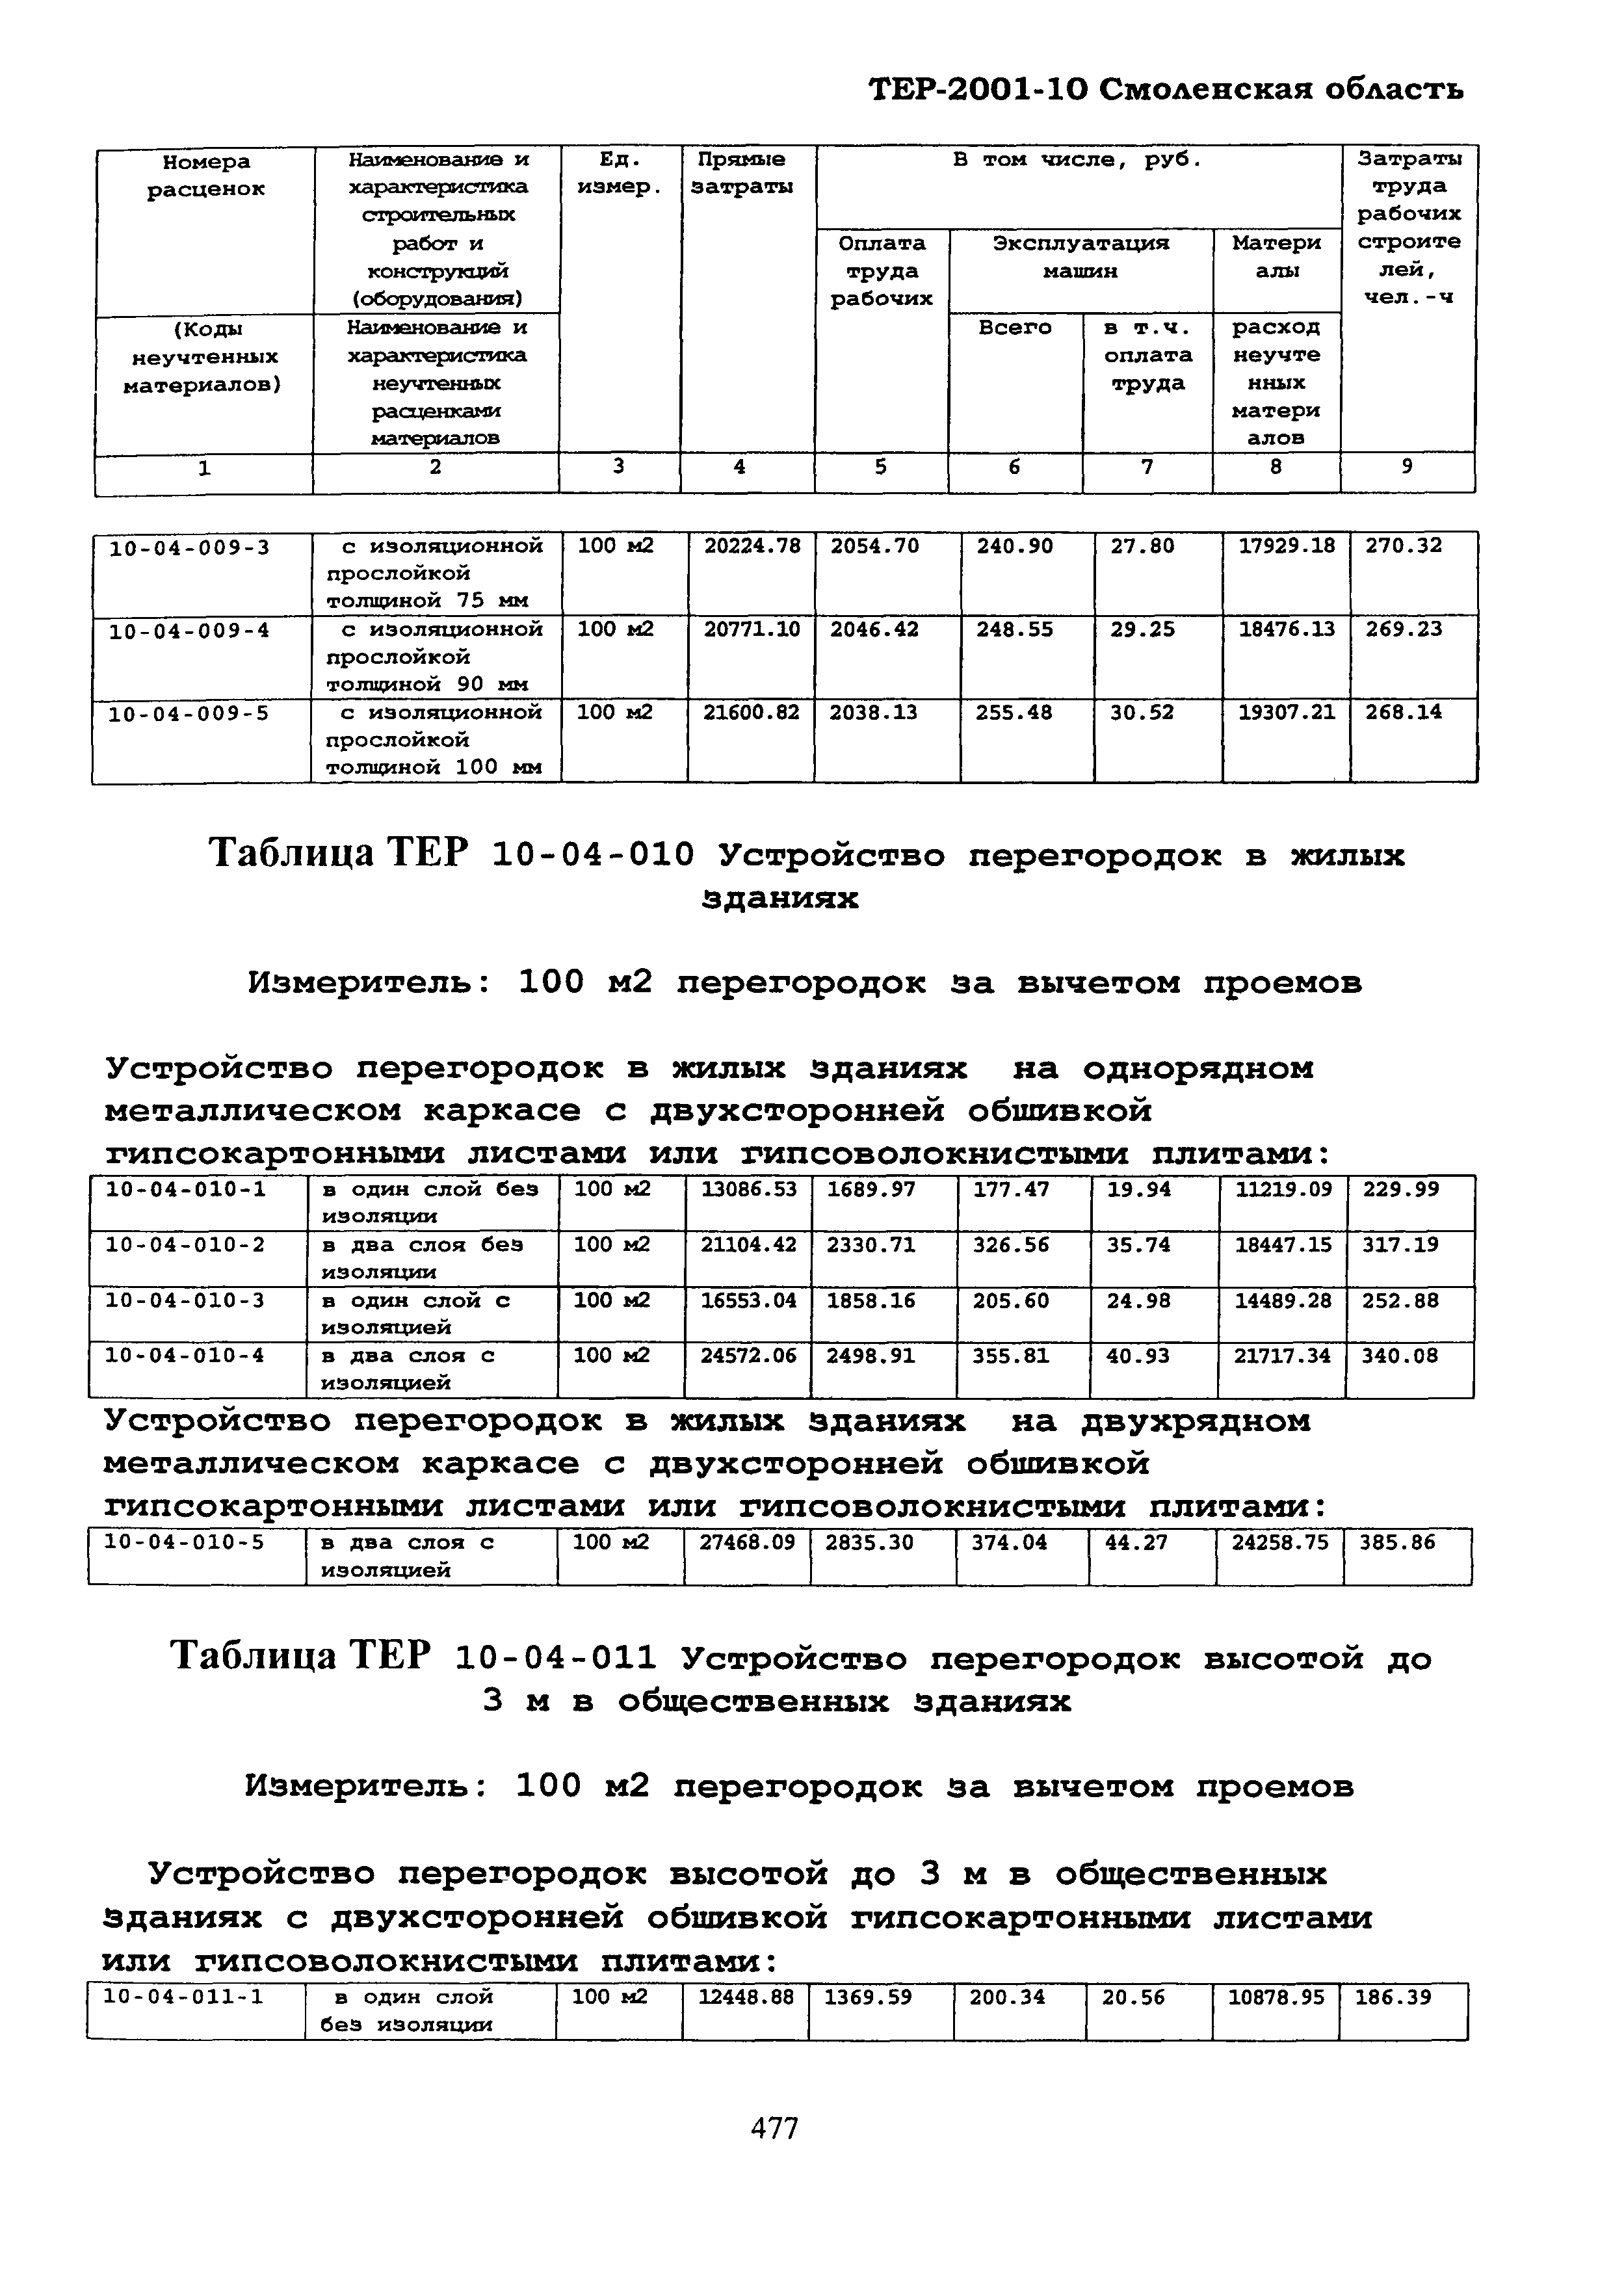 ТЕР Смоленской обл. 2001-10